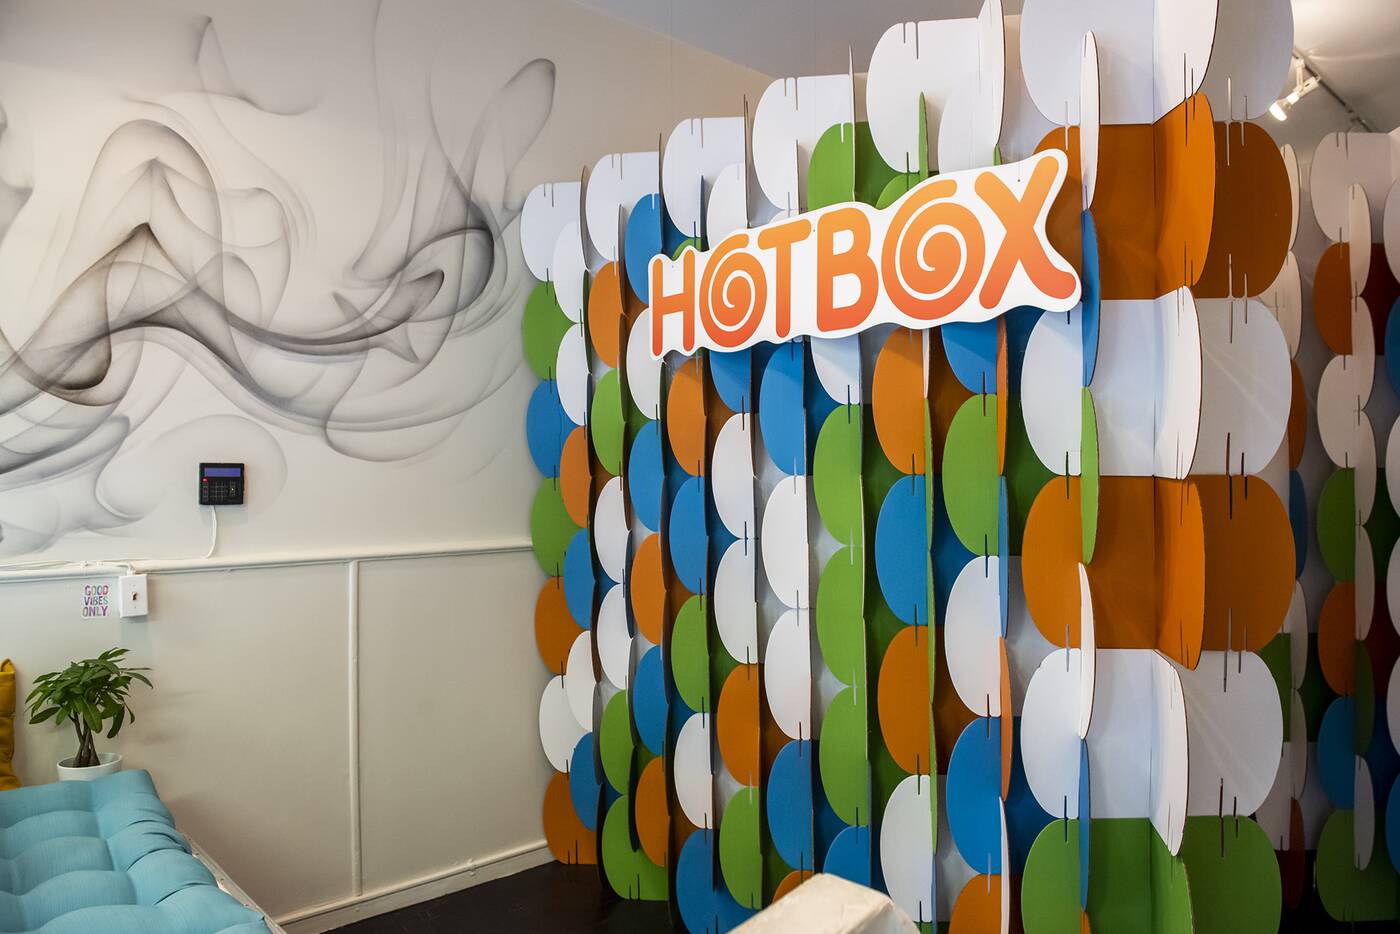 hotbox cafe toronto